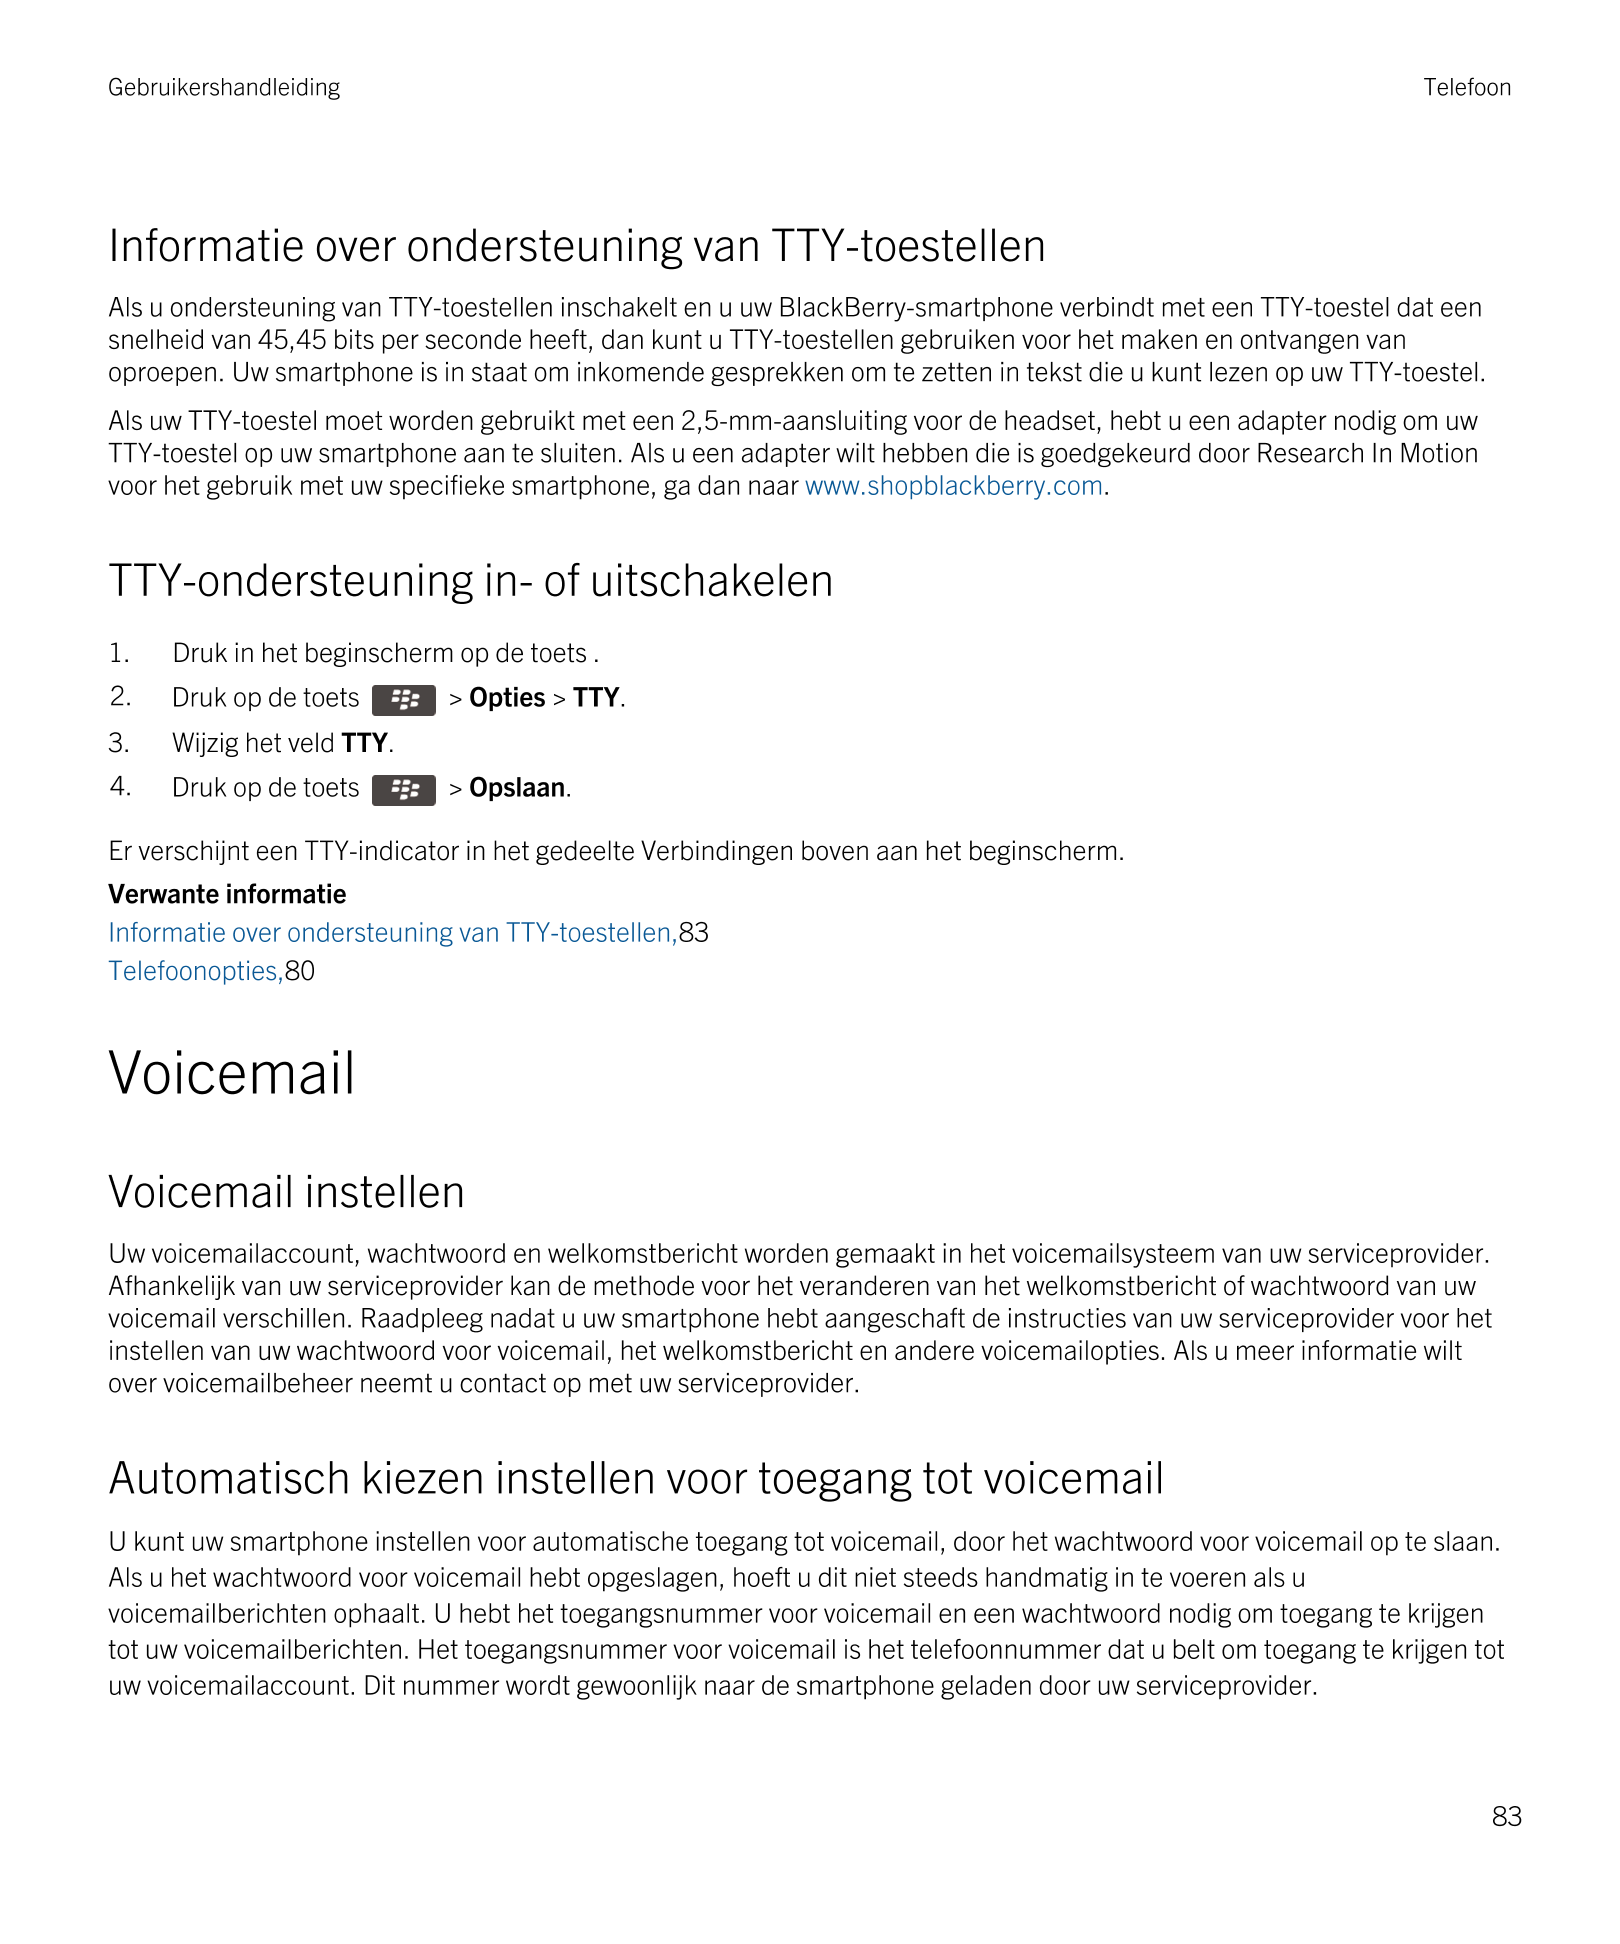 Gebruikershandleiding Telefoon
Informatie over ondersteuning van TTY-toestellen
Als u ondersteuning van TTY-toestellen inschakel